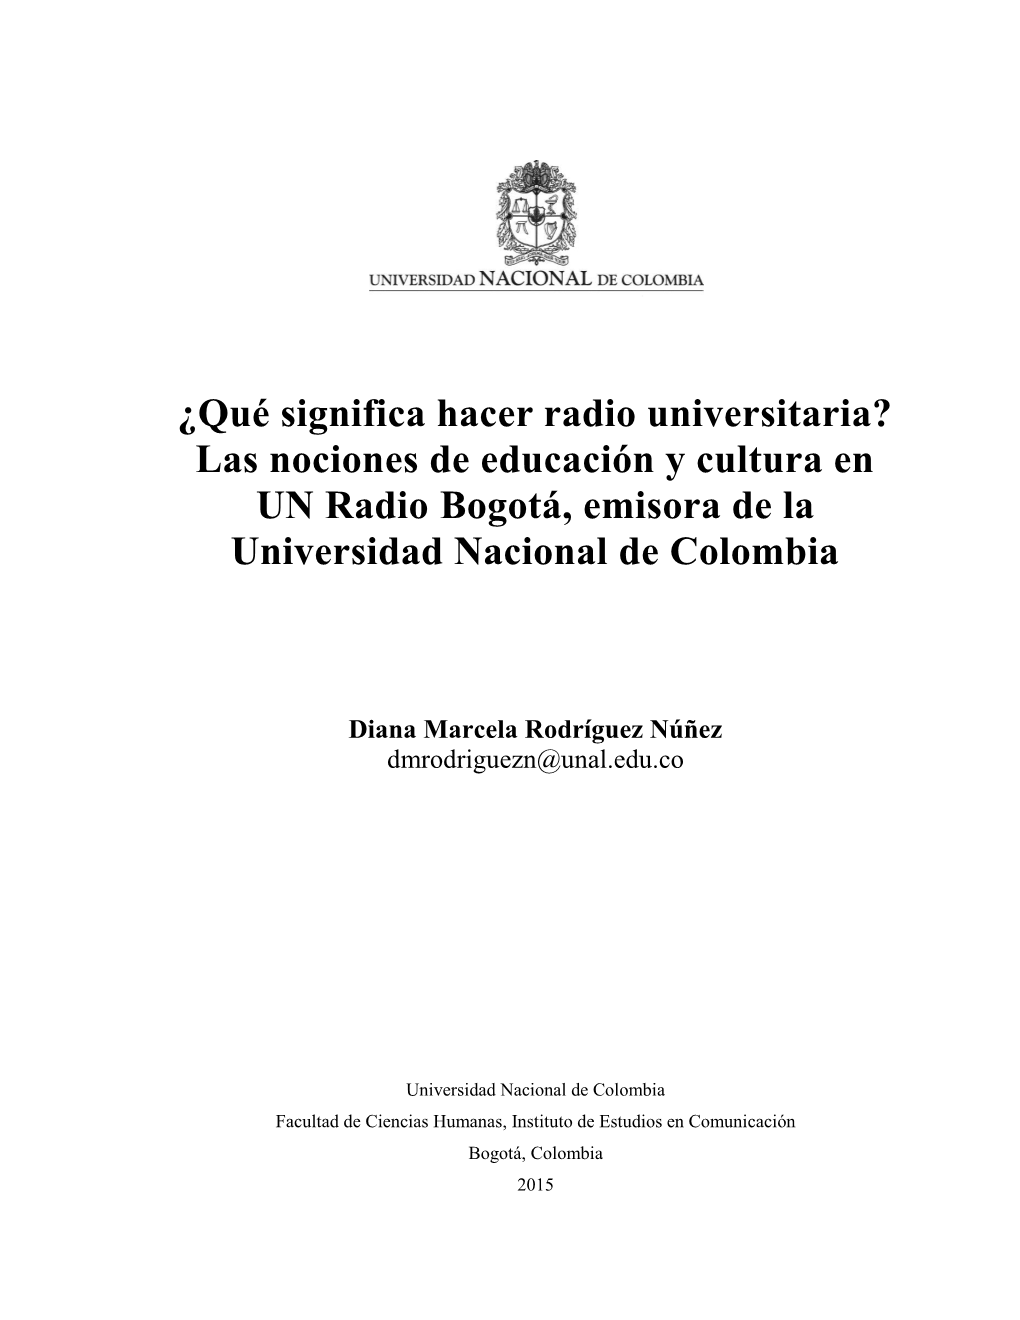 ¿Qué Significa Hacer Radio Universitaria? Las Nociones De Educación Y Cultura En UN Radio Bogotá, Emisora De La Universidad Nacional De Colombia